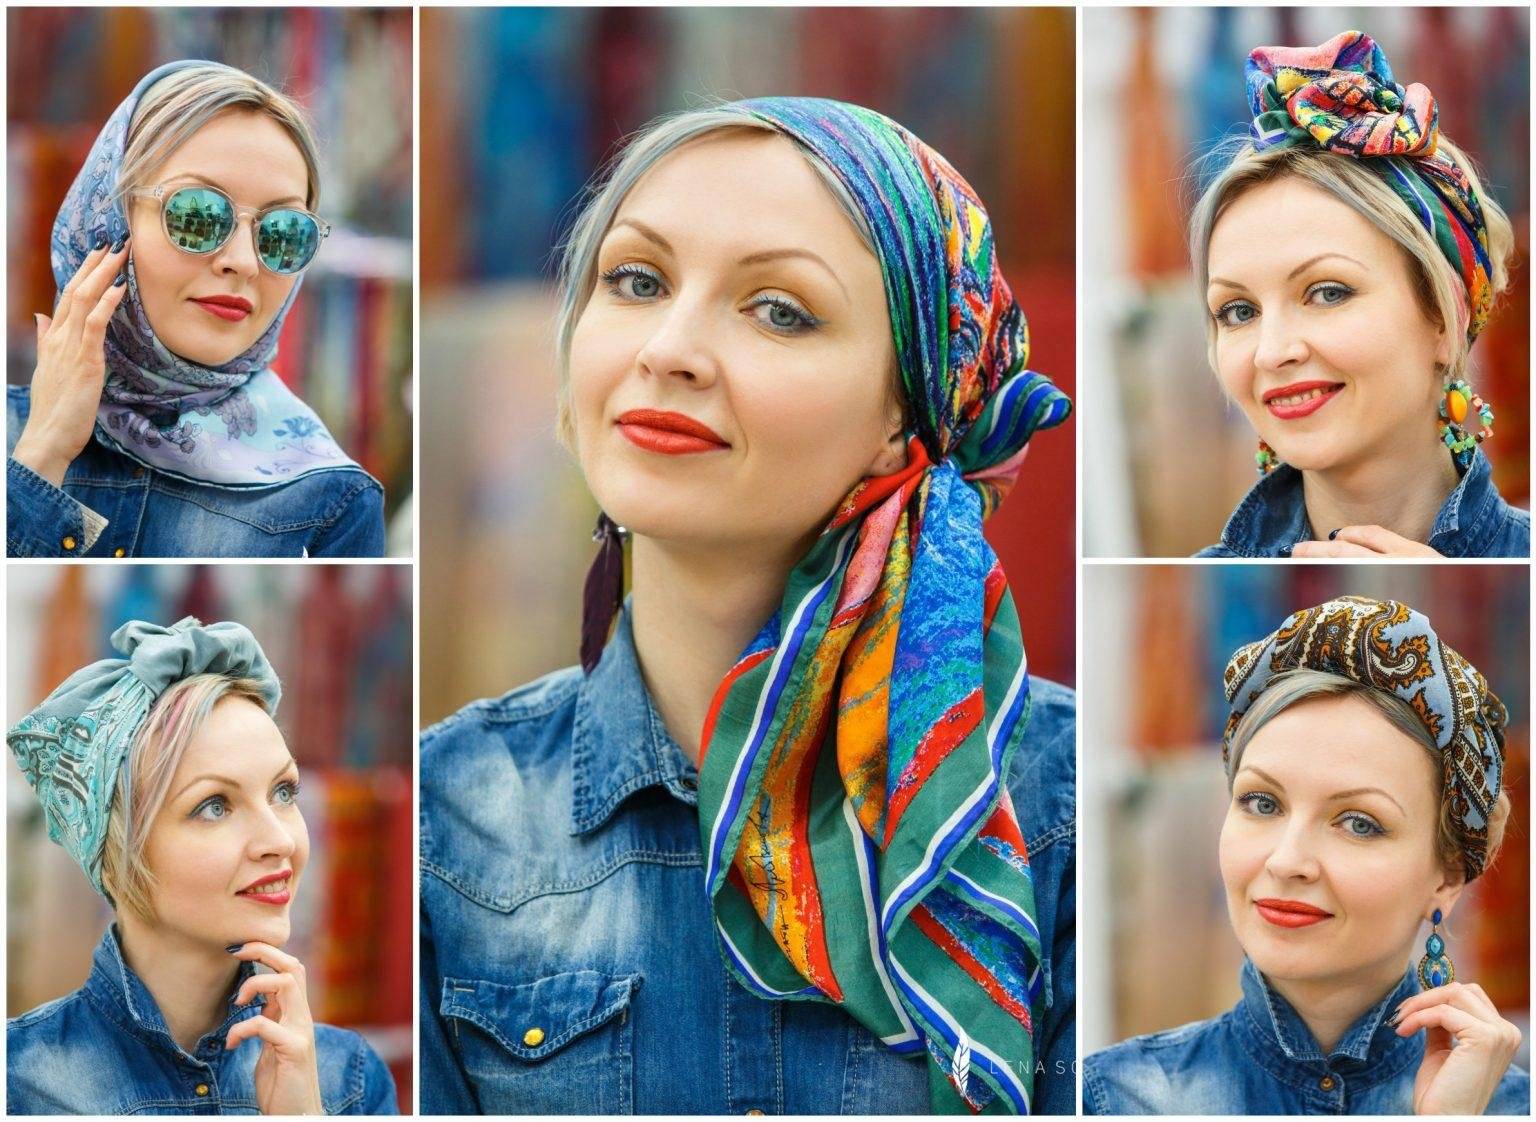 Как завязать платок на голове — лучшие варианты с фото и видео